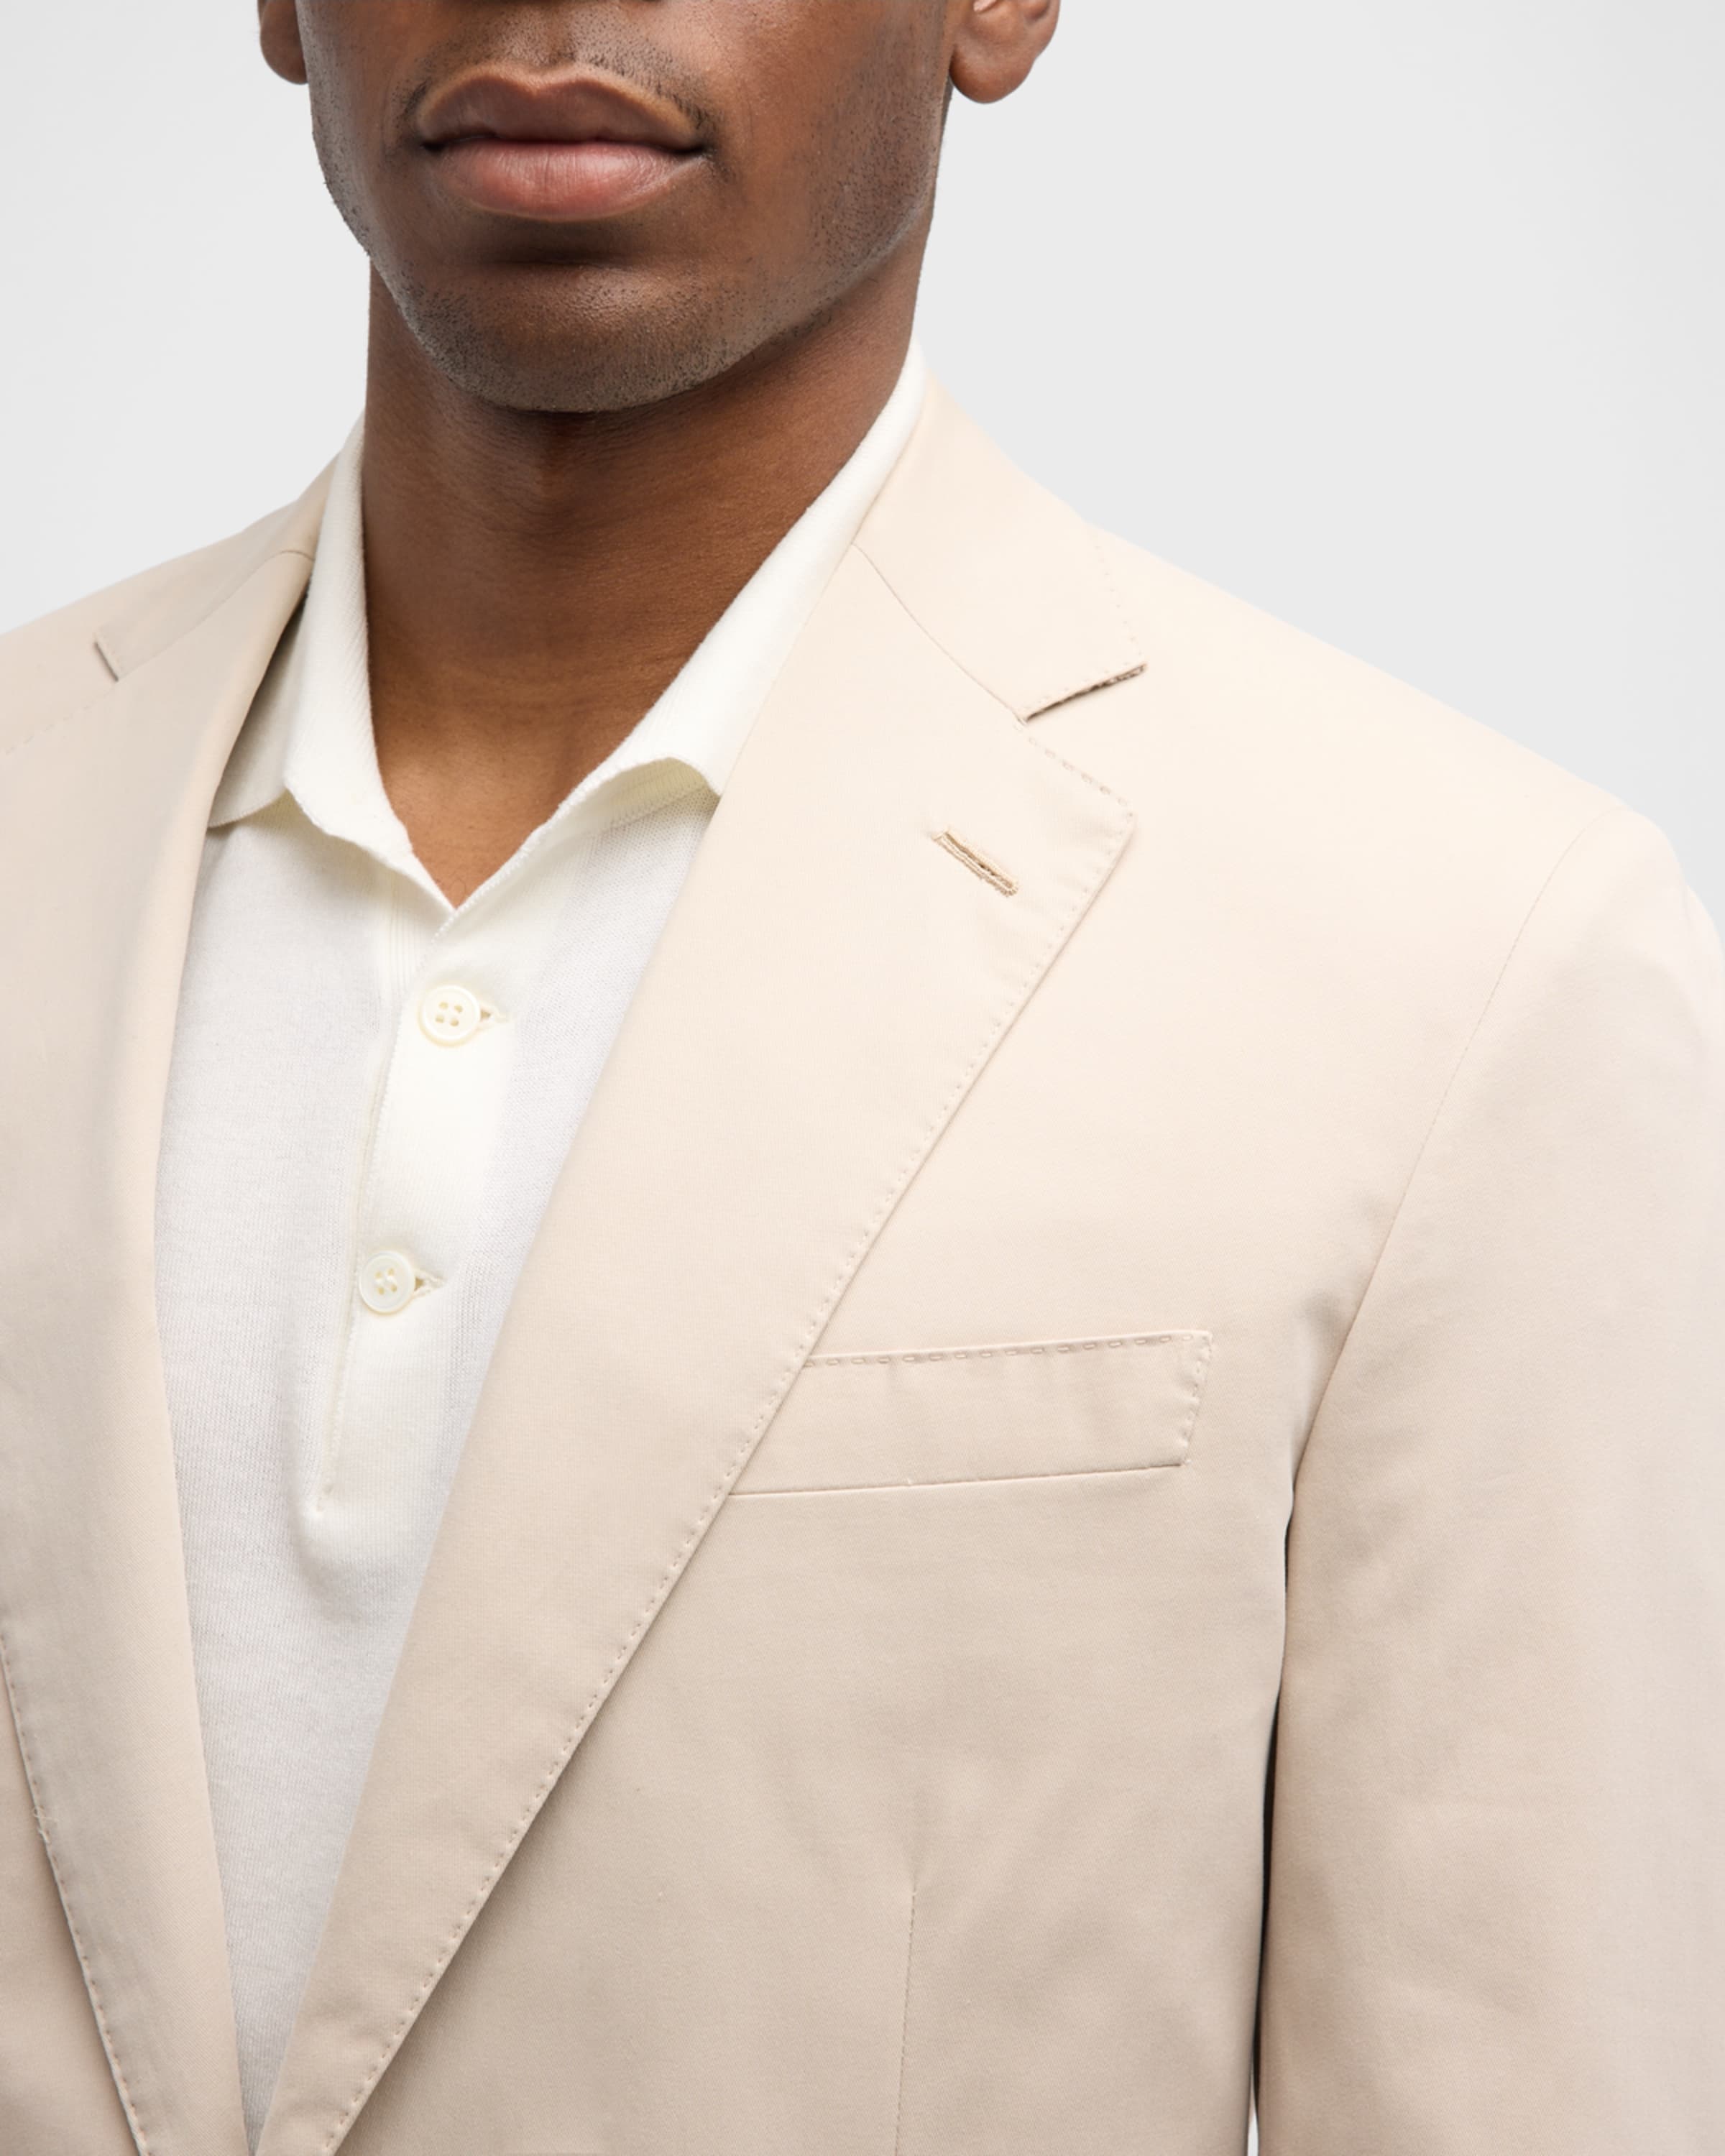 Men's Solid Cashmere-Cotton Suit - 1